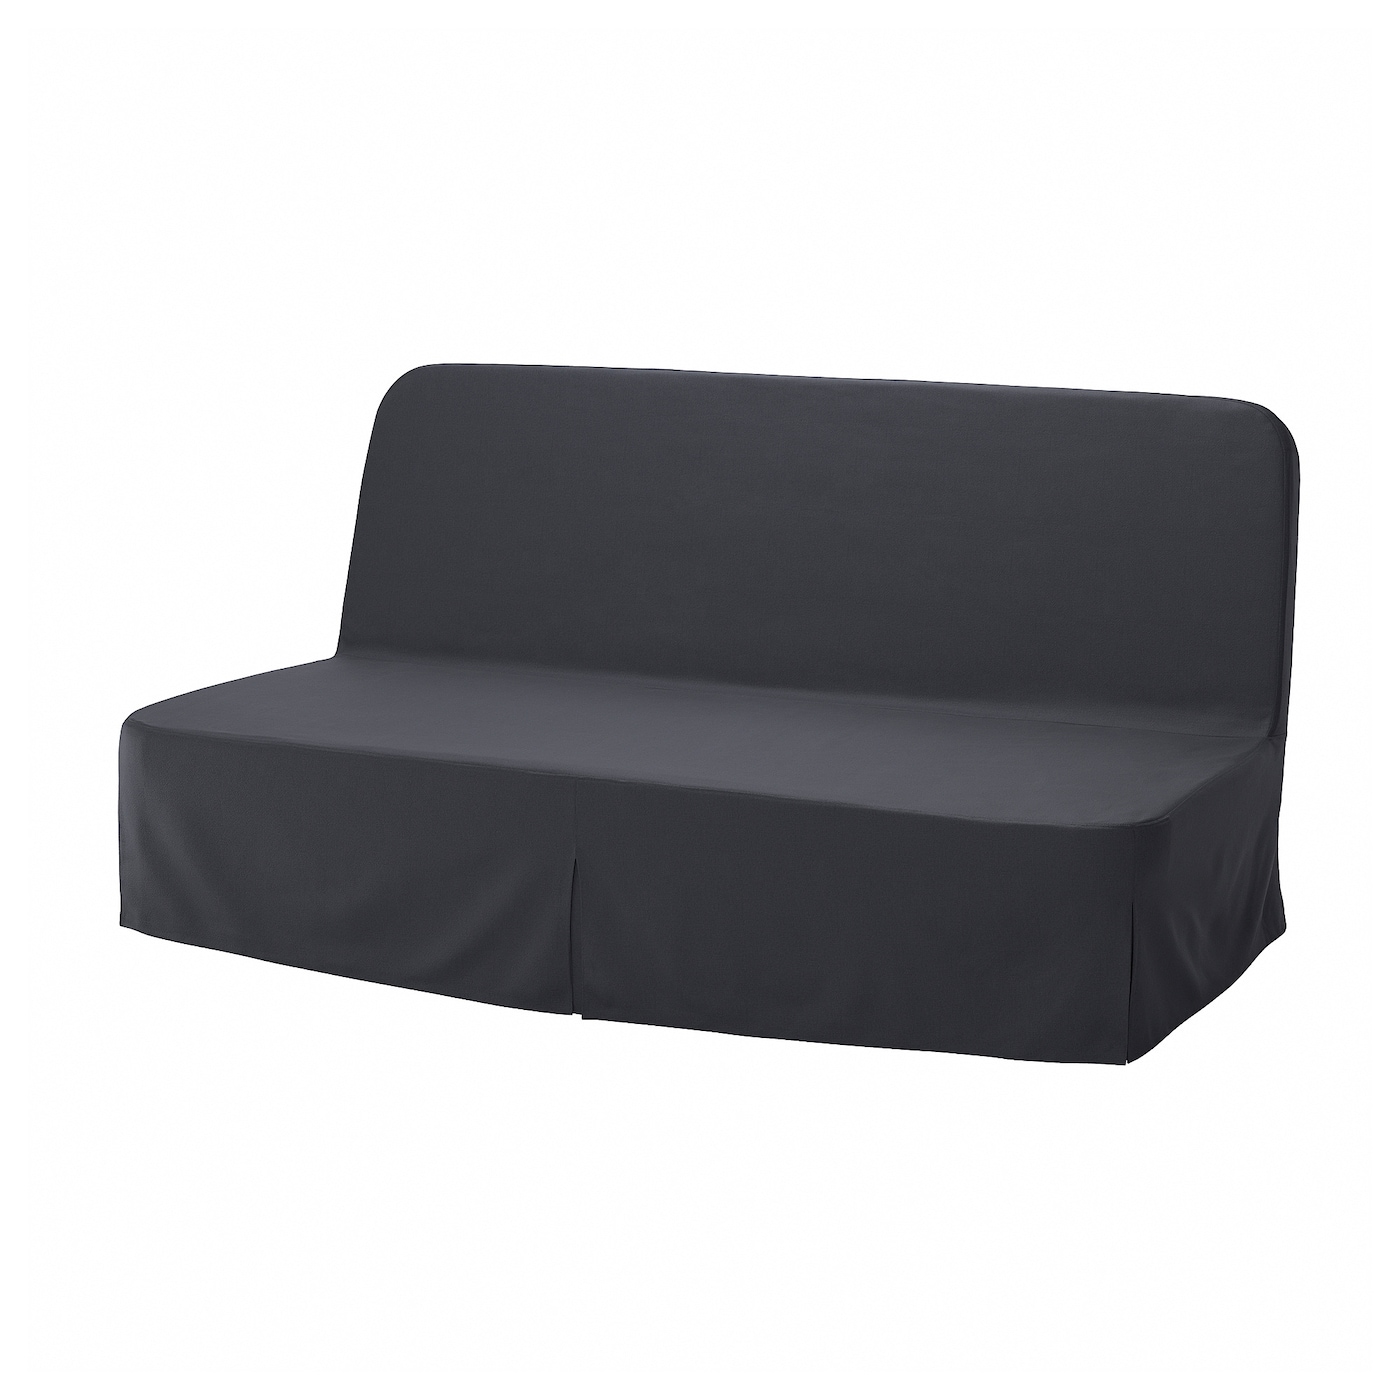 NYHAMN 3-местный диван-кровать с поролоновым матрасом Naggen/темно-серый IKEA домашний одноместный диван кровать спинка стул для спальни односпальный диван для девушек удобное эркерное окно маленький диван складн